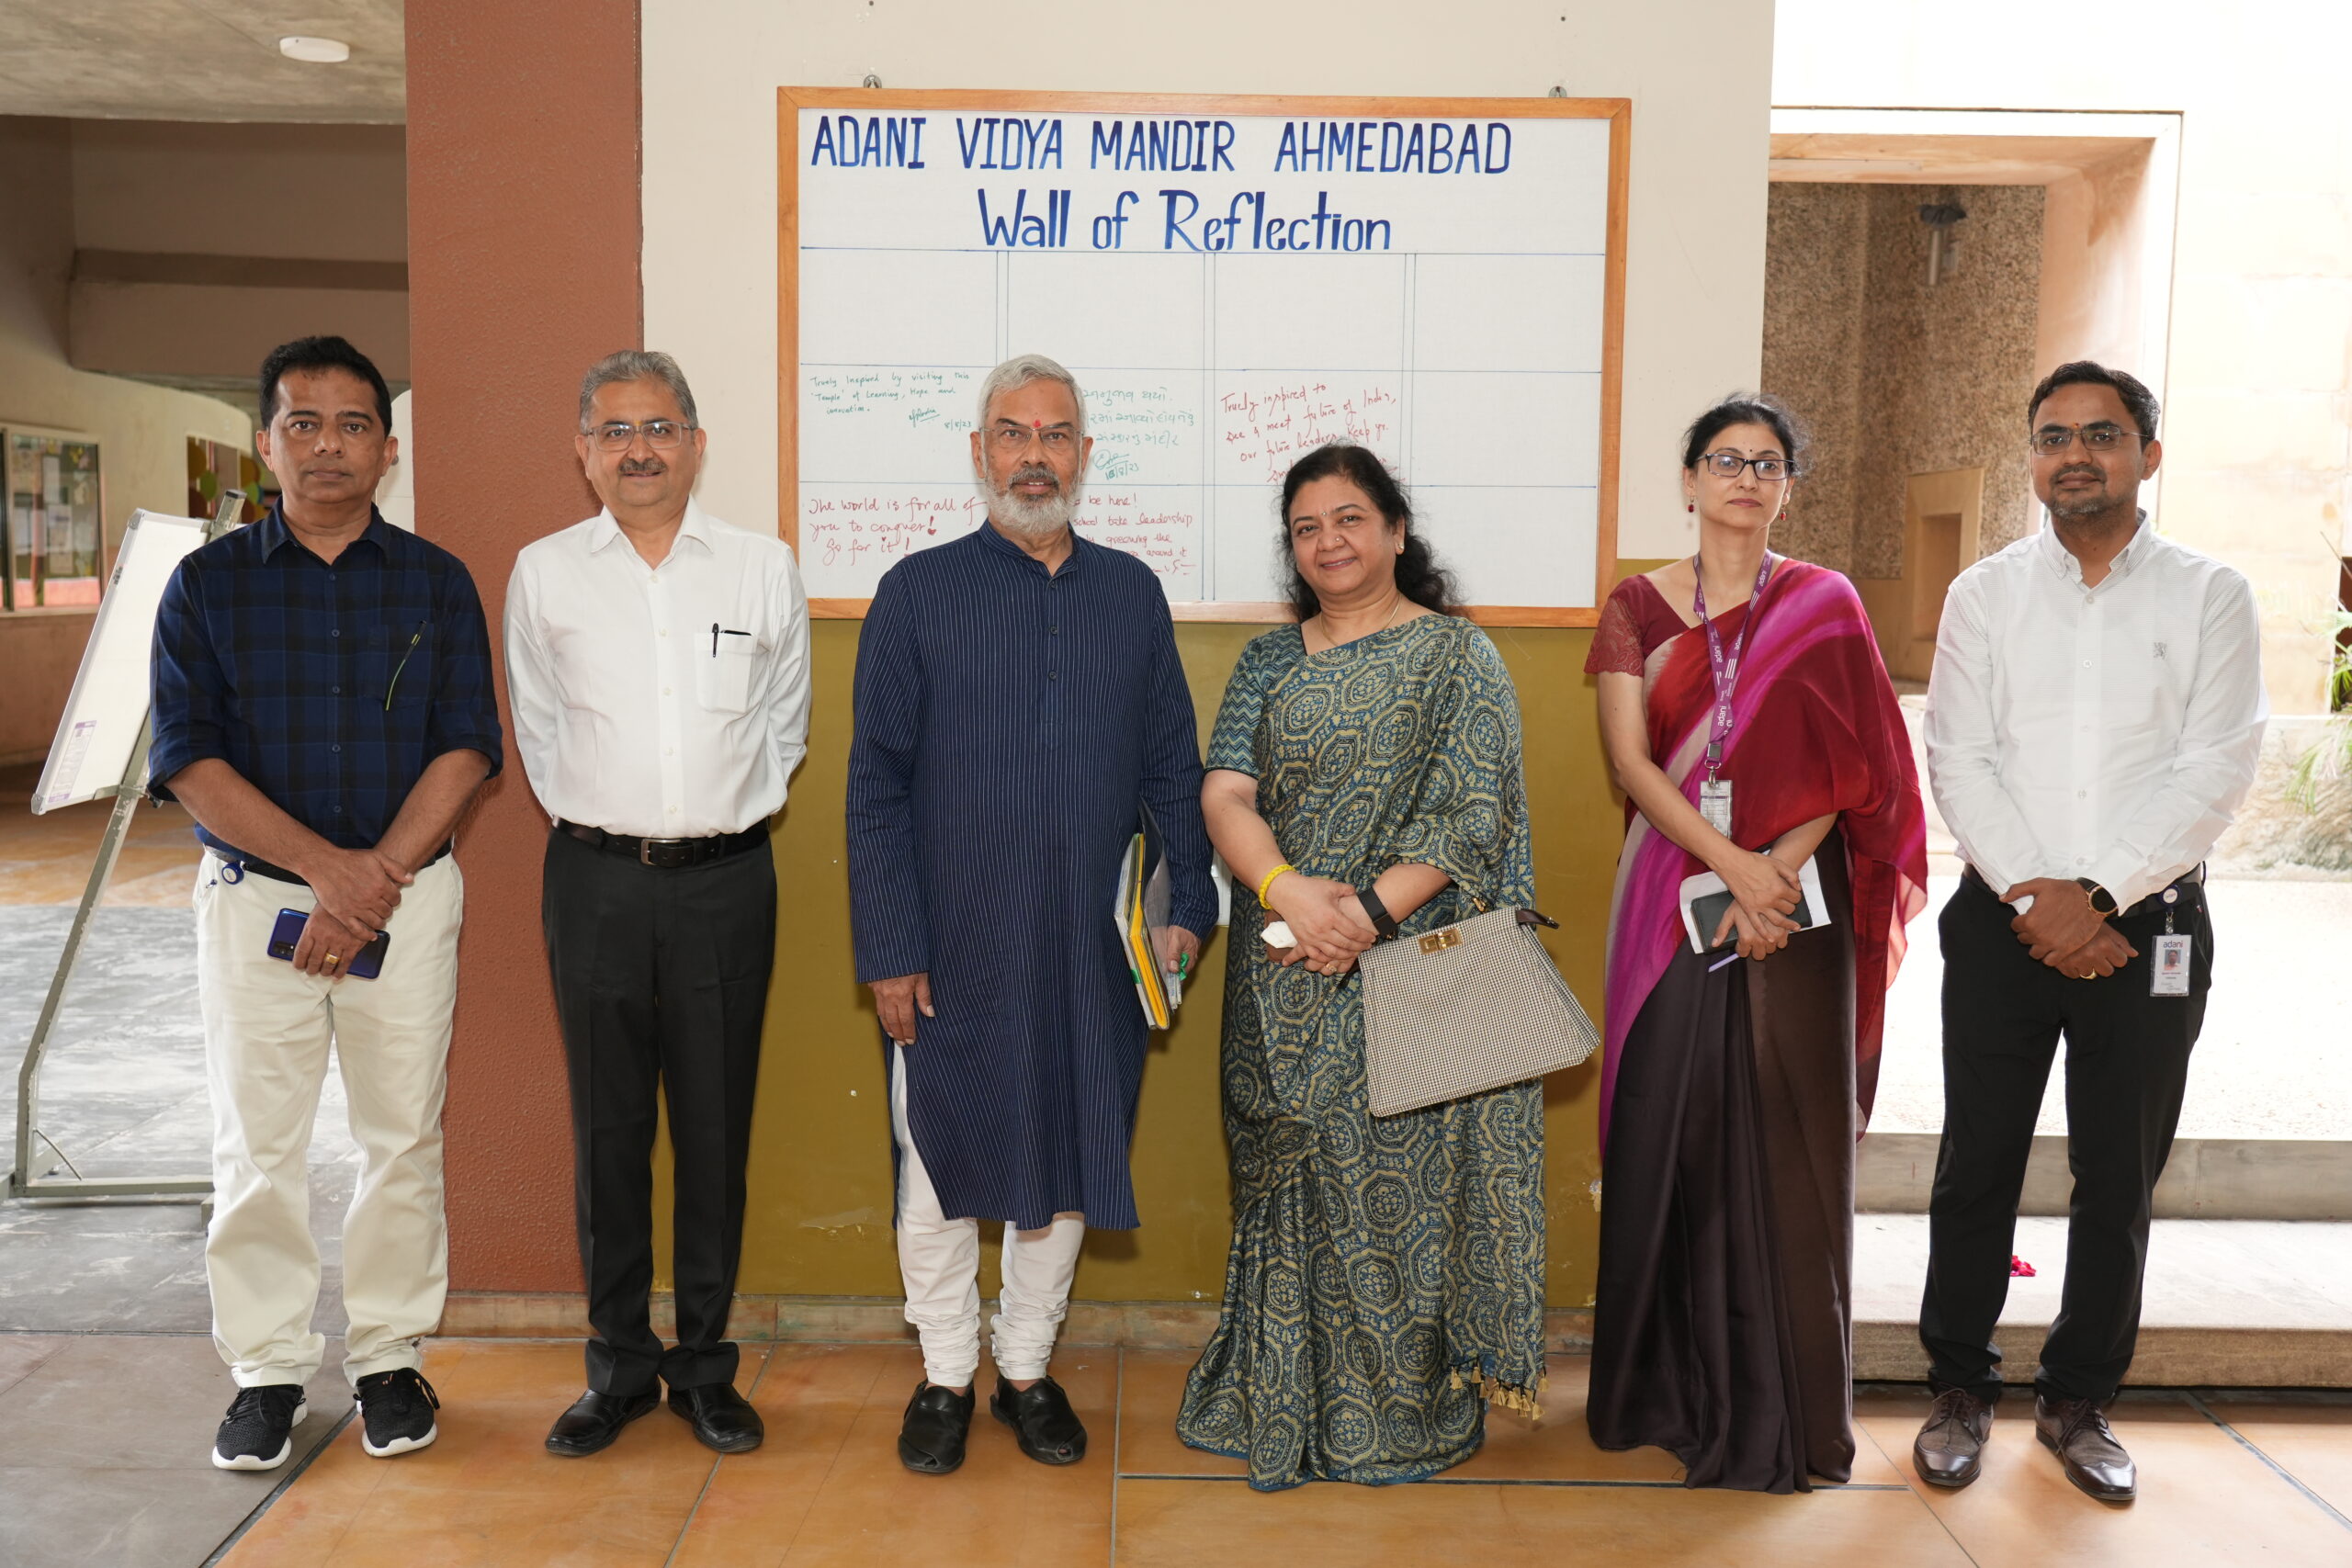 વિકસીત ભારત અને ક્લાઈમેટચેન્જના પડકારોને પહોંચી વળવા AVMA ખાતે સંવાદ